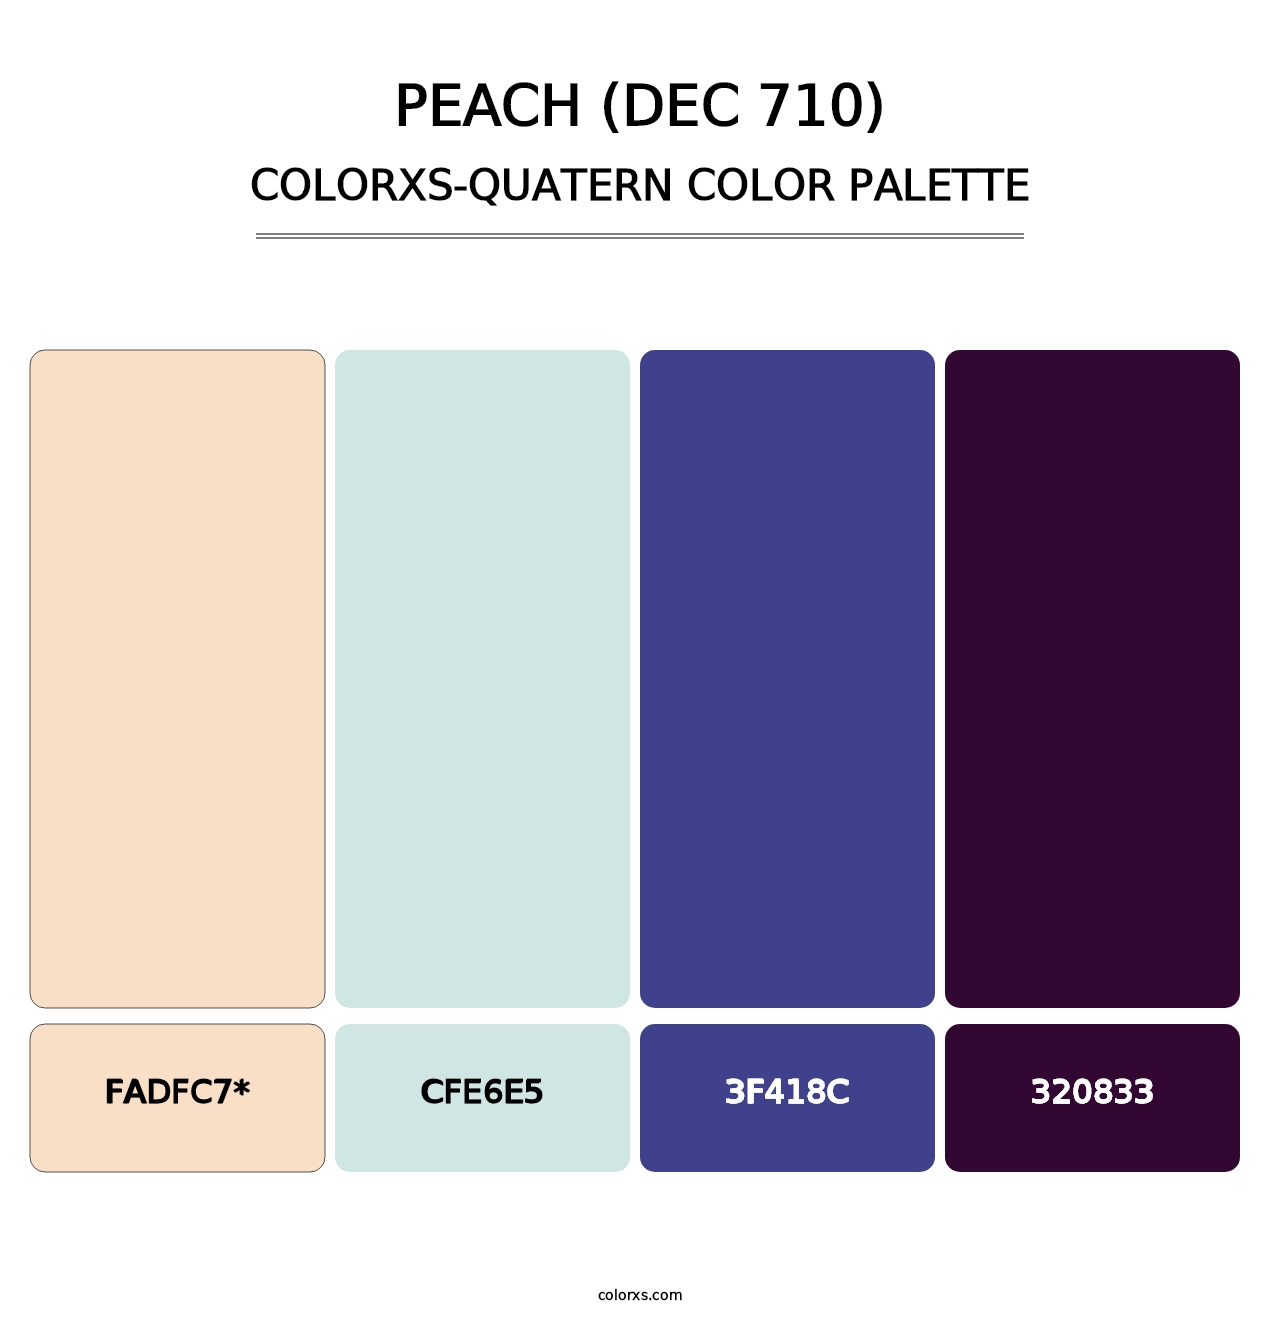 Peach (DEC 710) - Colorxs Quad Palette